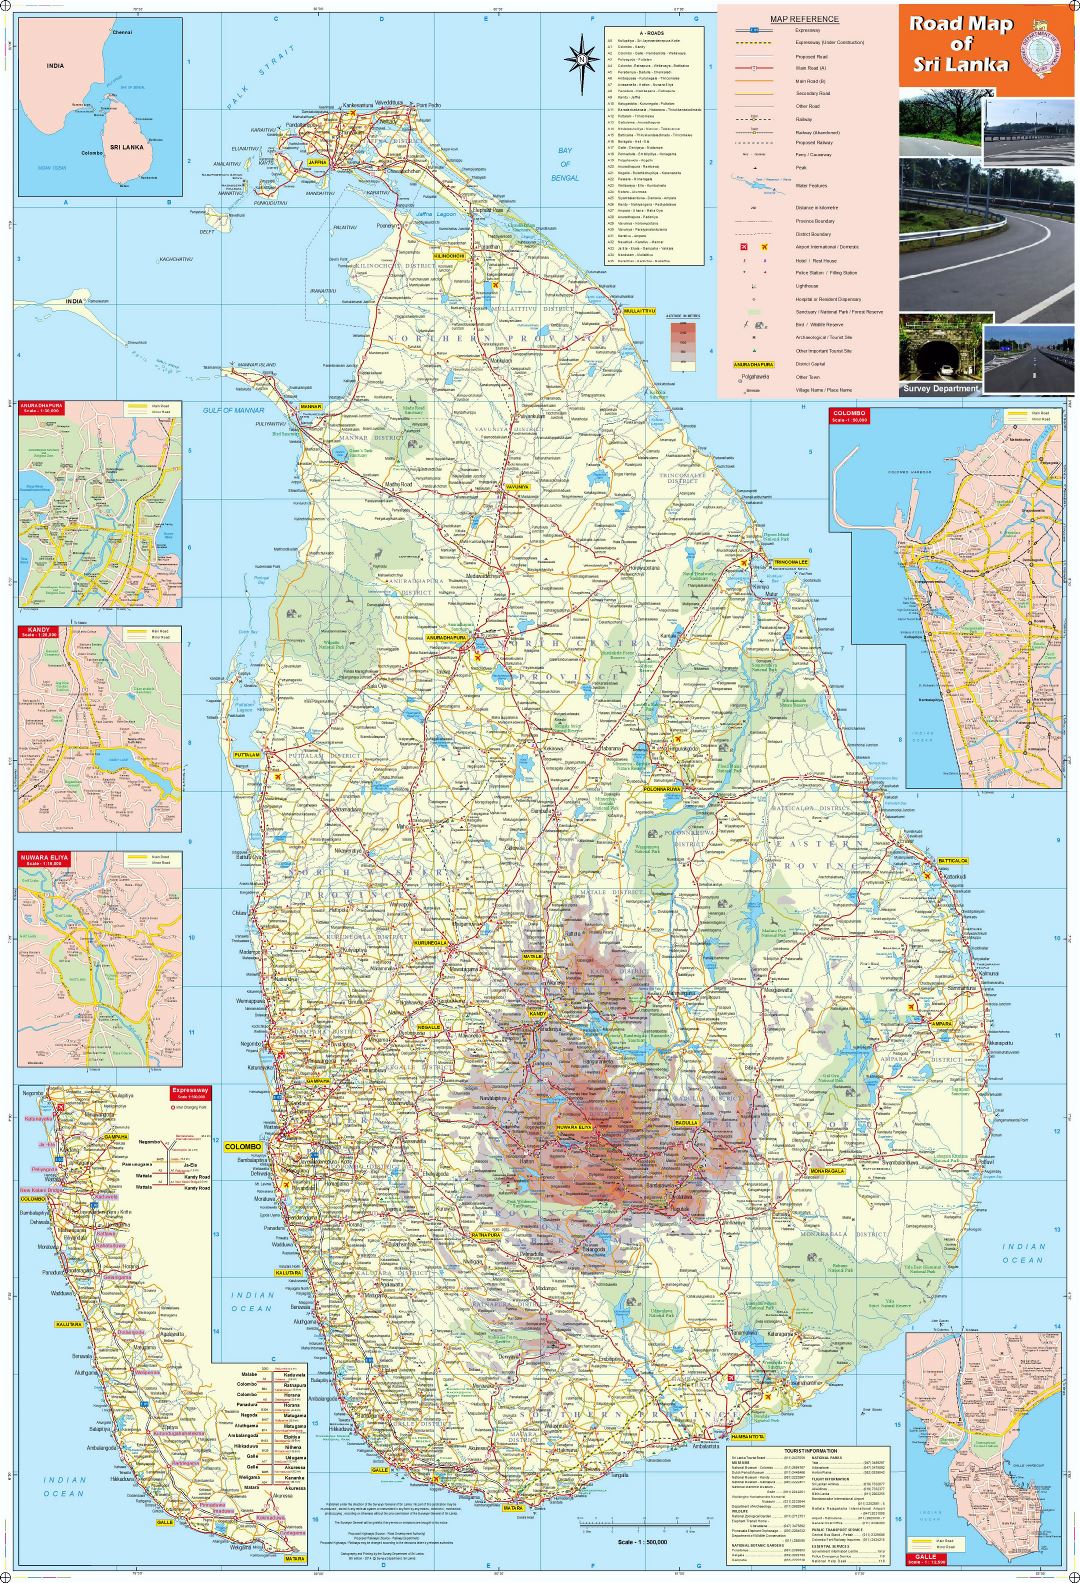 Grande detallado mapa de Sri Lanka con todas ciudades, carreteras, ferrocarriles, aeropuertos y otras marcas